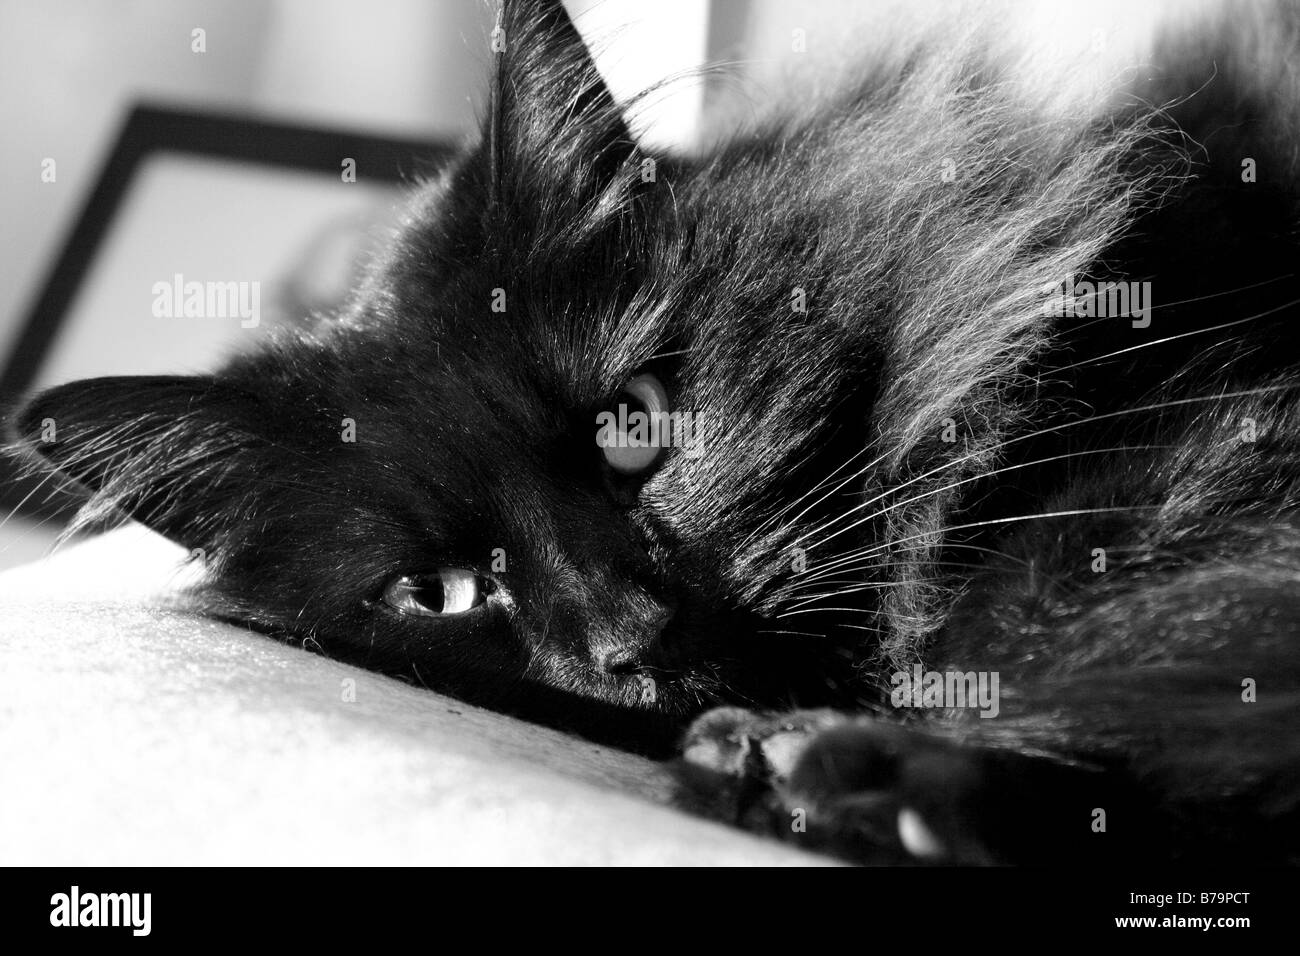 Un chat noir de détente sur le canapé Banque D'Images